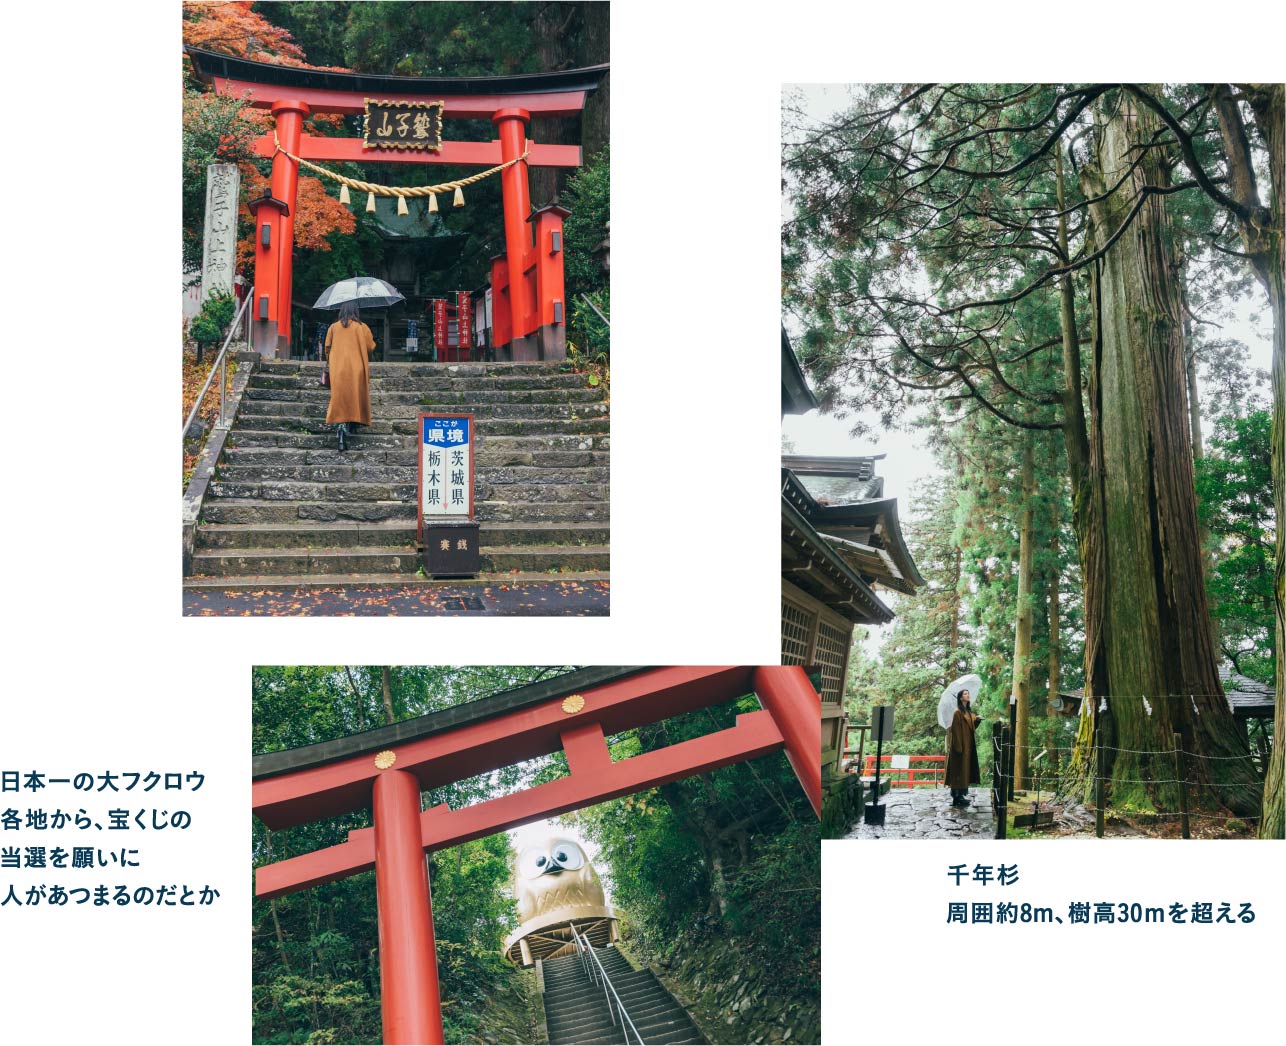 栃木県と茨城県の県境を跨いで鎮座する鷲子山上神社で運気UP!